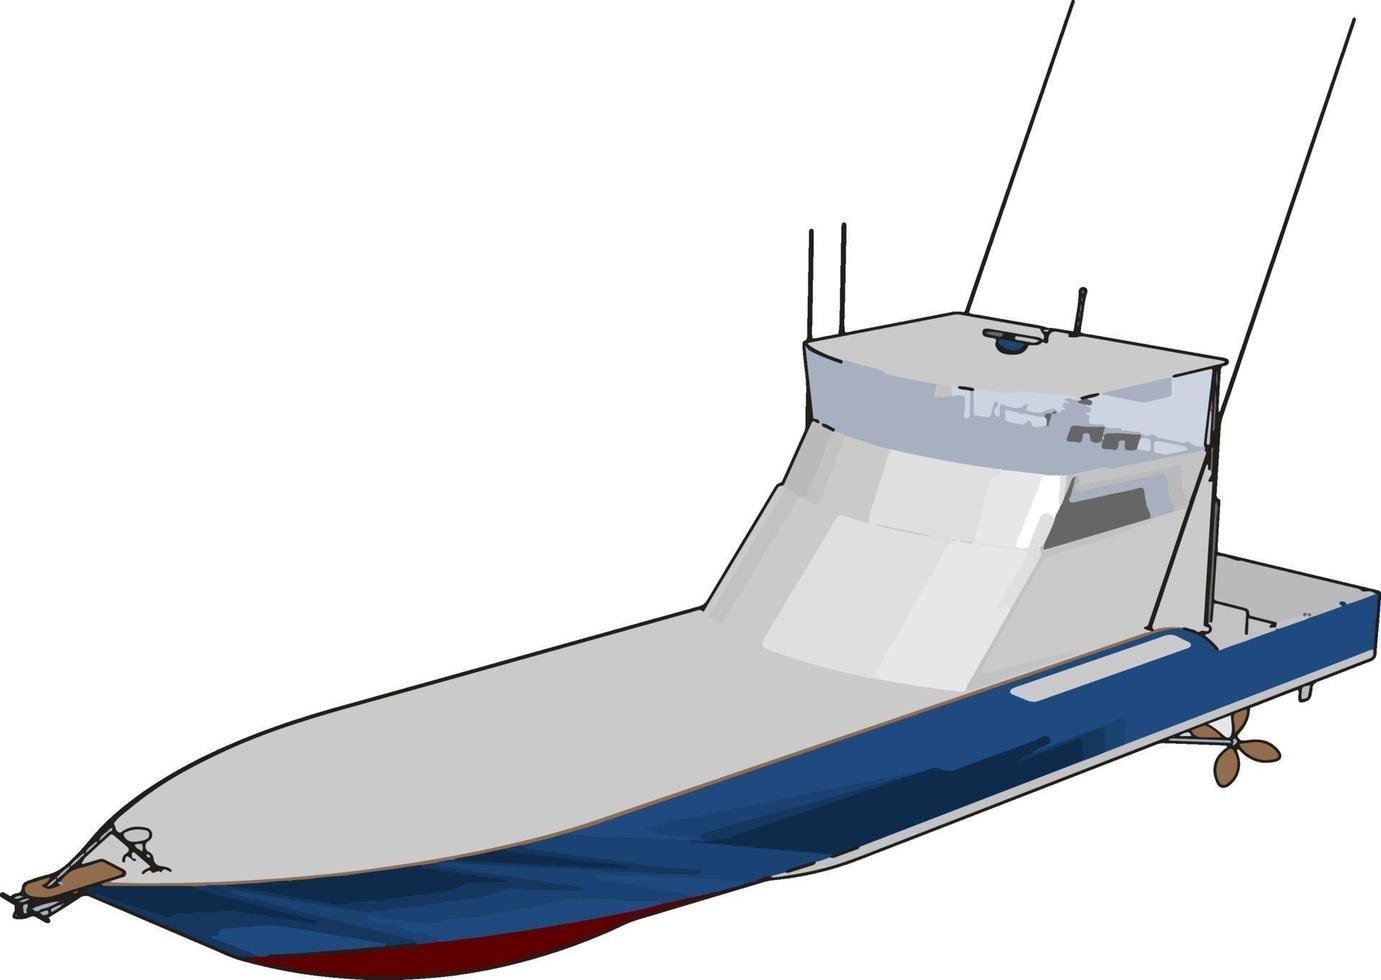 modell av hastighet båt, illustration, vektor på vit bakgrund.